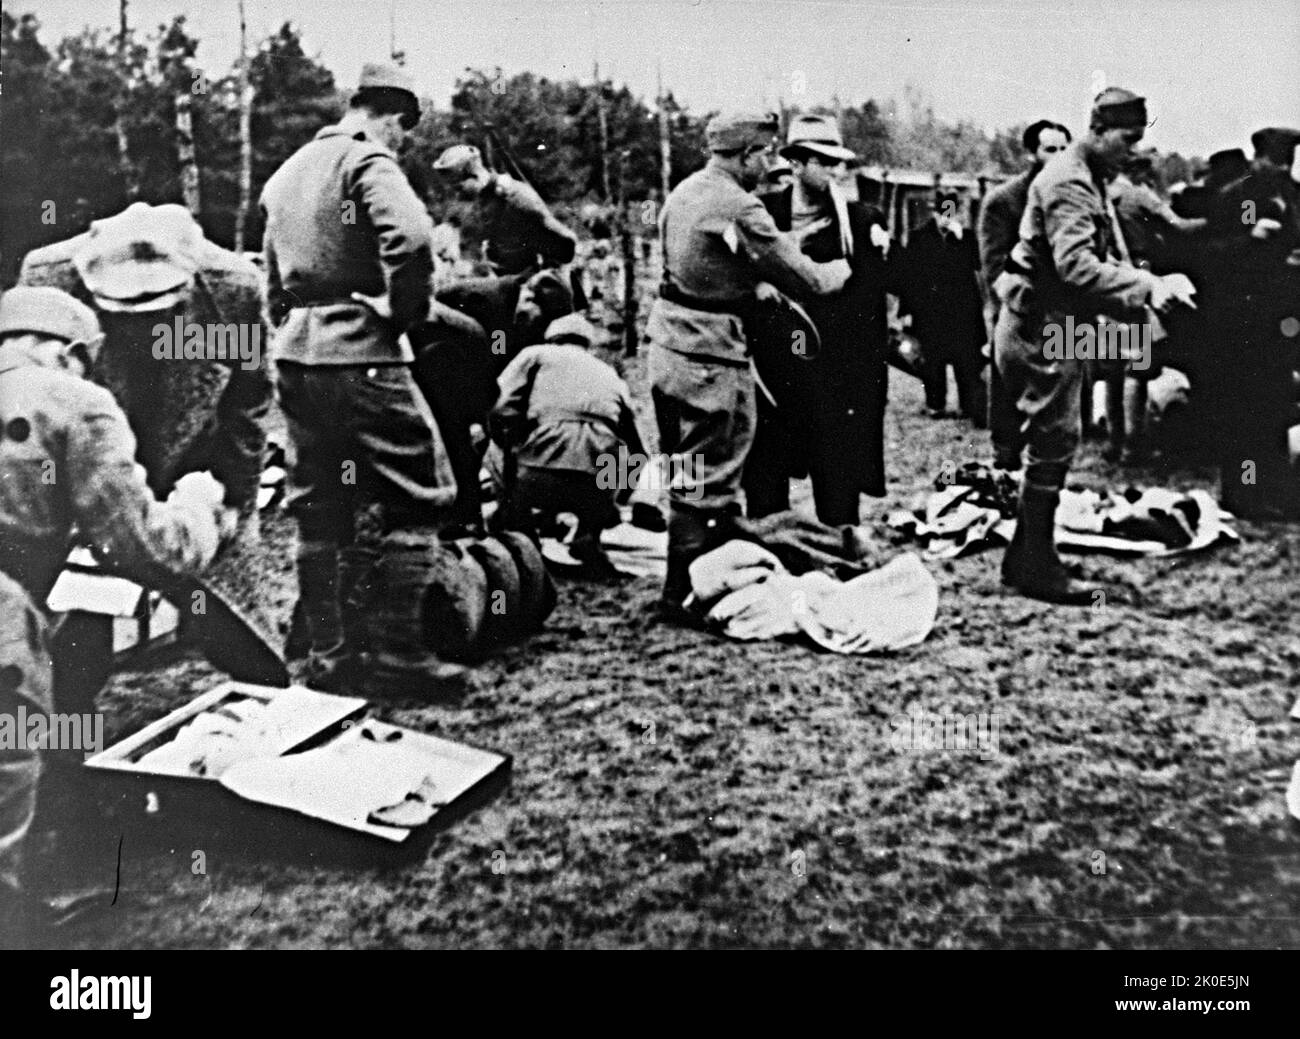 Les effets des prisonniers nouvellement arrivés sont saisis par l'Ustasa à Jasenovac. L'Ustasa (mouvement révolutionnaire croate) ou ustase était une organisation fasciste croate, entre 1929 et 1945. Jasenovac était un camp de concentration et d'extermination établi en Yougoslavie occupée pendant la Seconde Guerre mondiale Banque D'Images